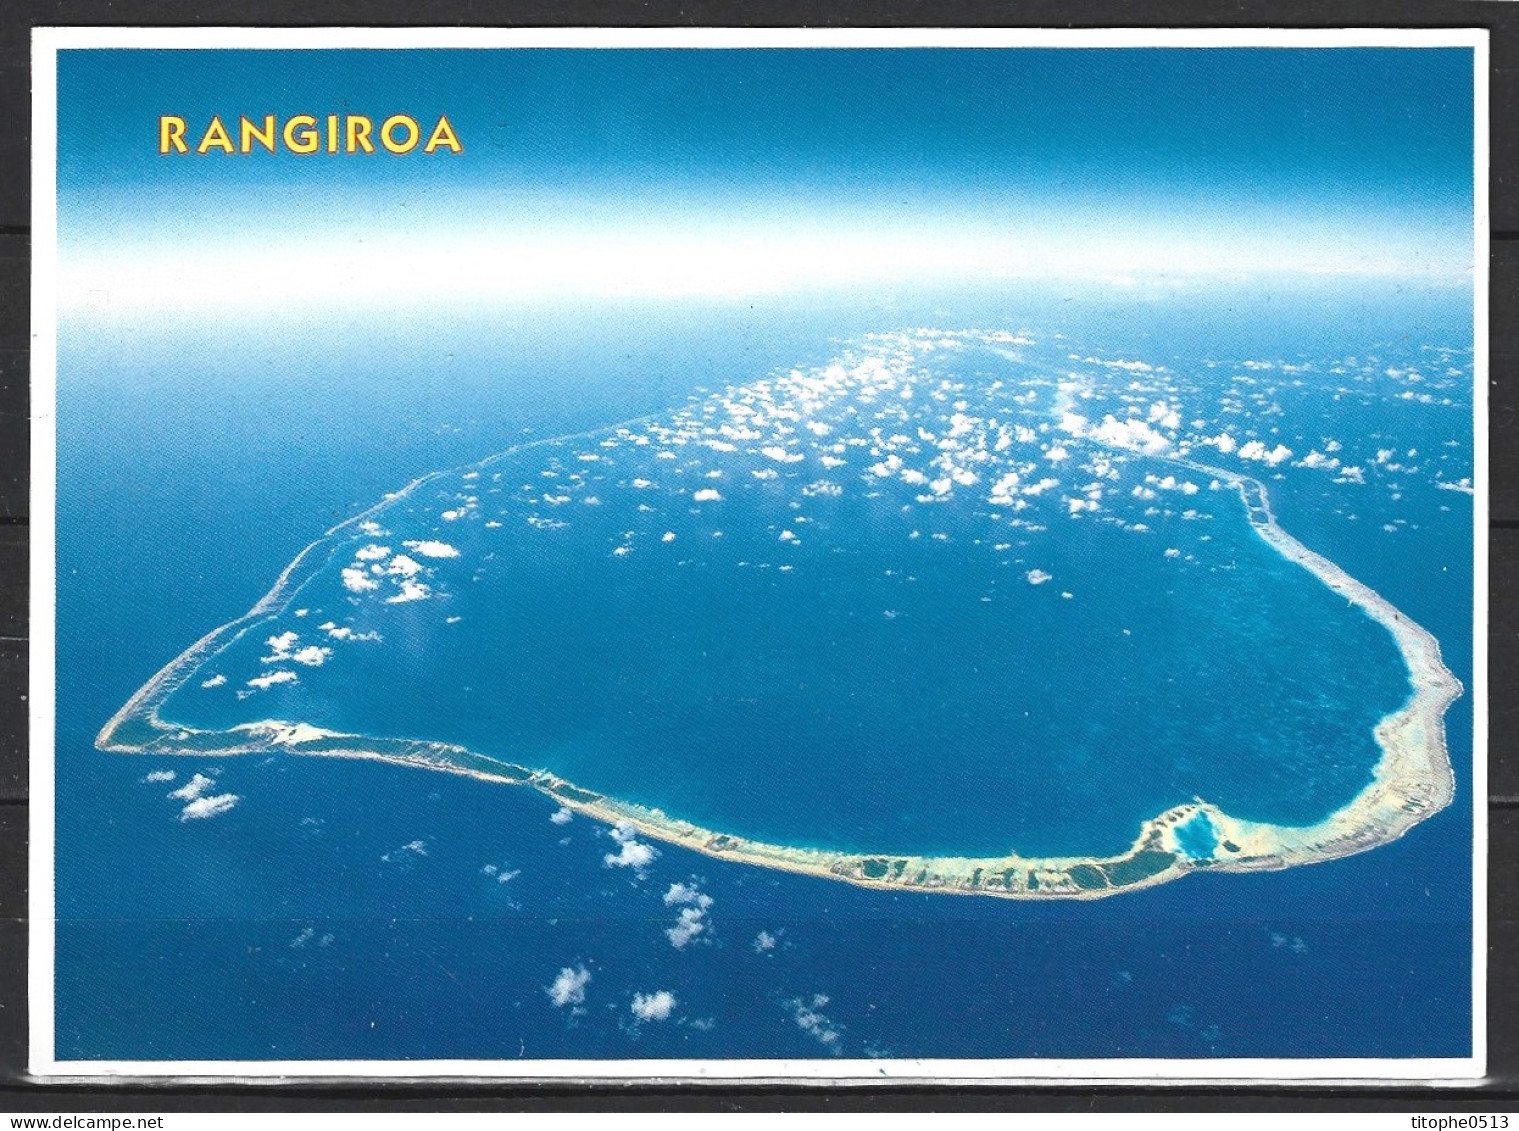 POLYNESIE. Carte Postale écrite. Rangiroa. - French Polynesia